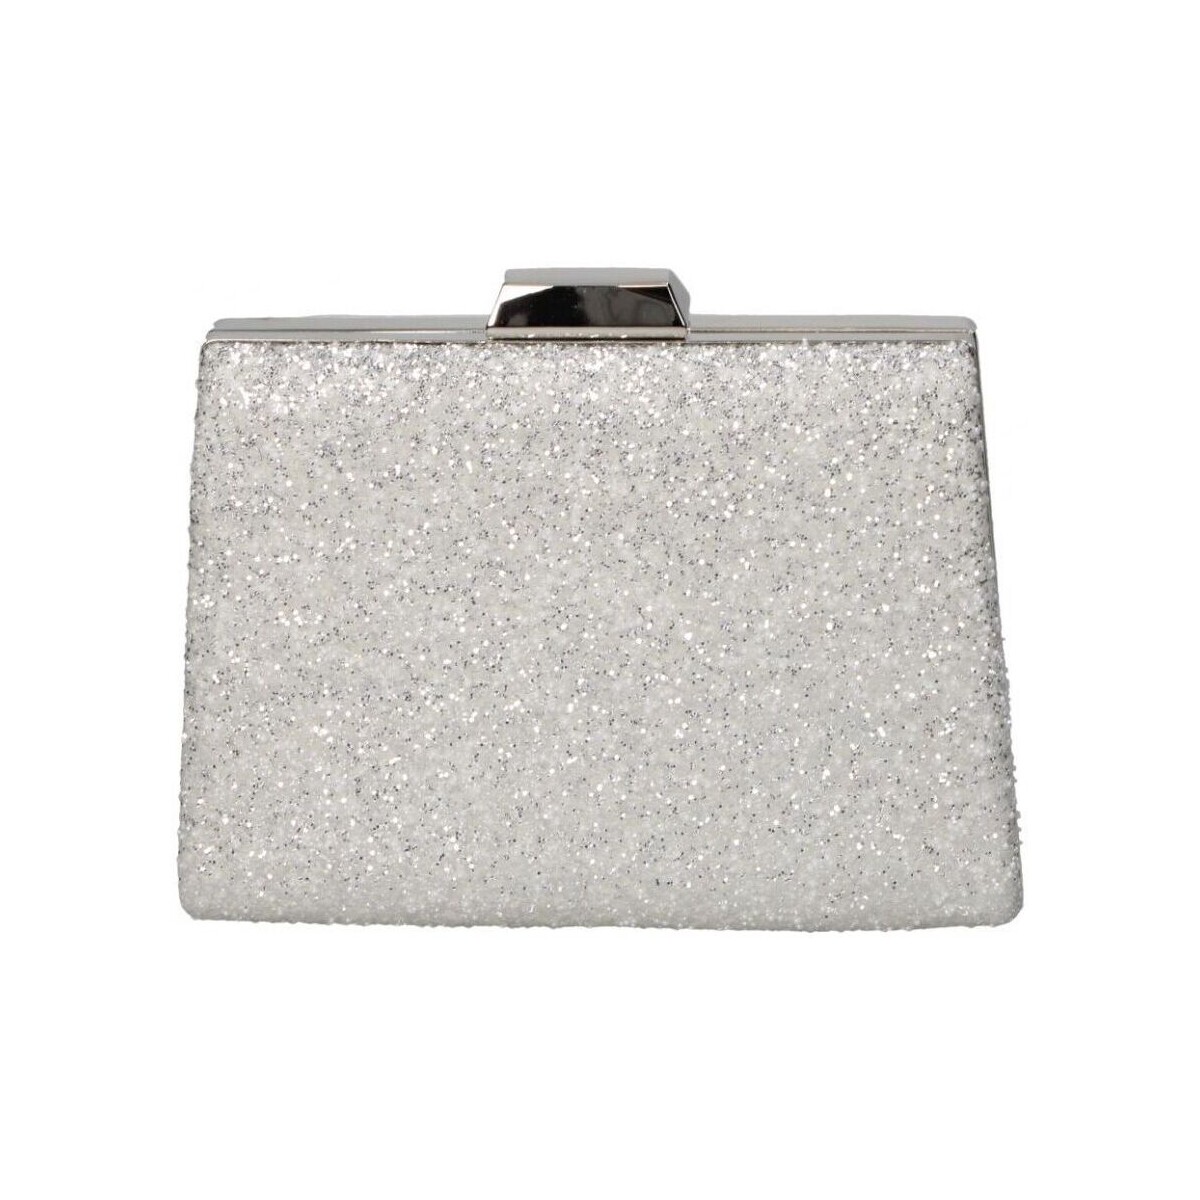 Taschen Damen Abendtasche und Clutch Fortunne 2309C-7 Silbern